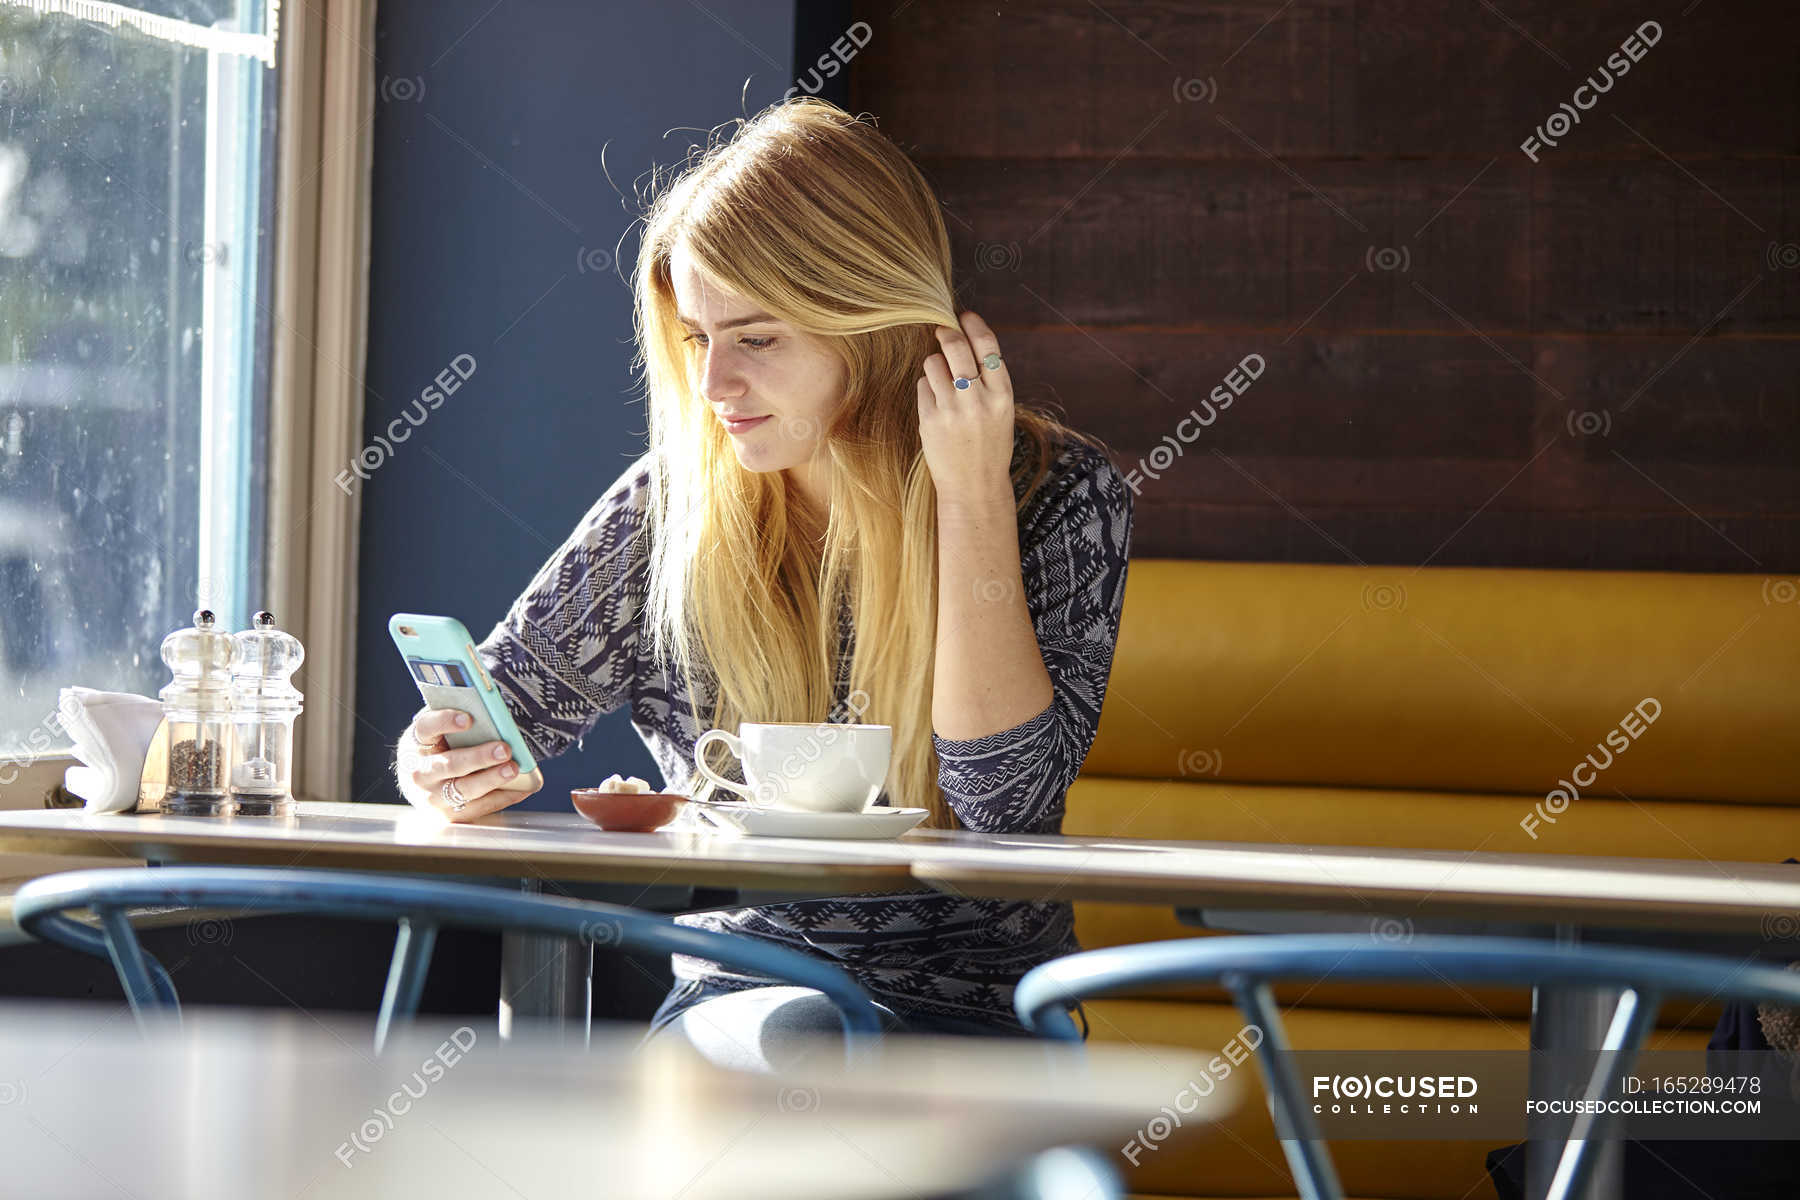 Возвращение в кафе читать. Девушка со смартфоном. Чтение в кафе. Девушка читает в кафе. Светлая картинка где люди сидят в кафе и читают книги.